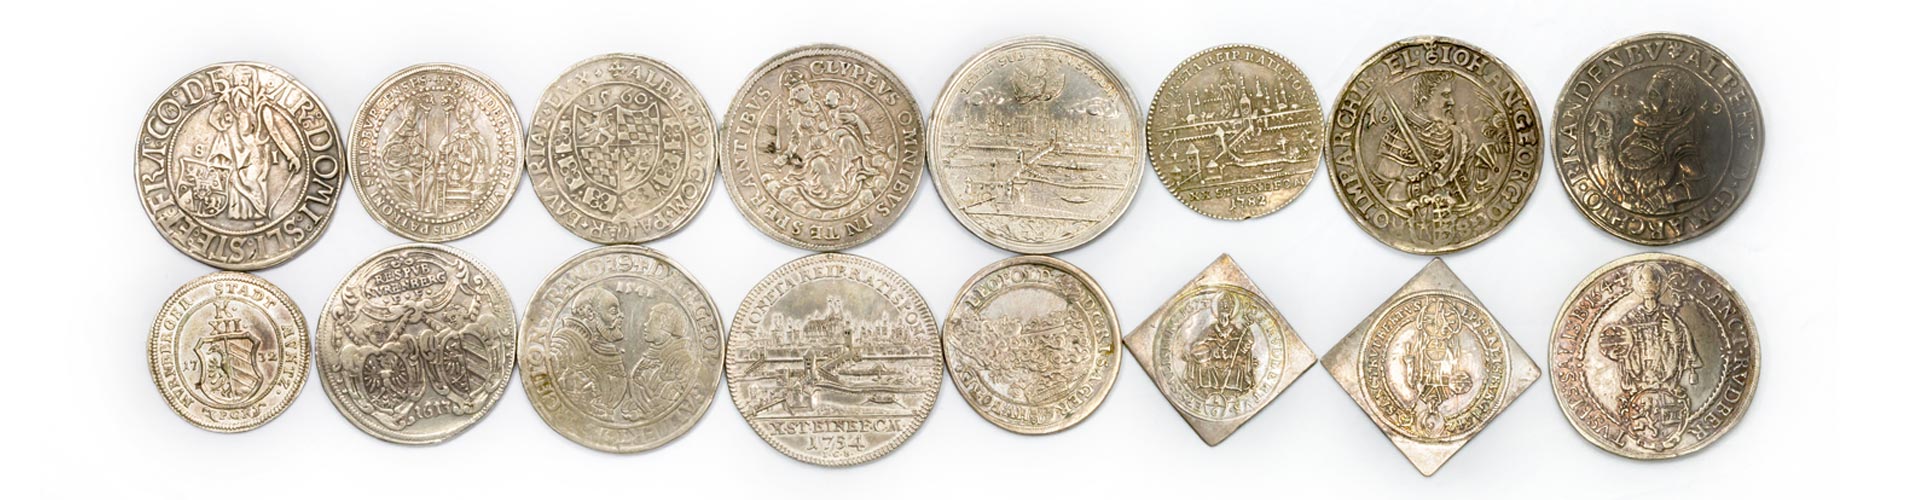 16 Verschiedene historische Silbermünzen und Sammlermünzen aus Silber